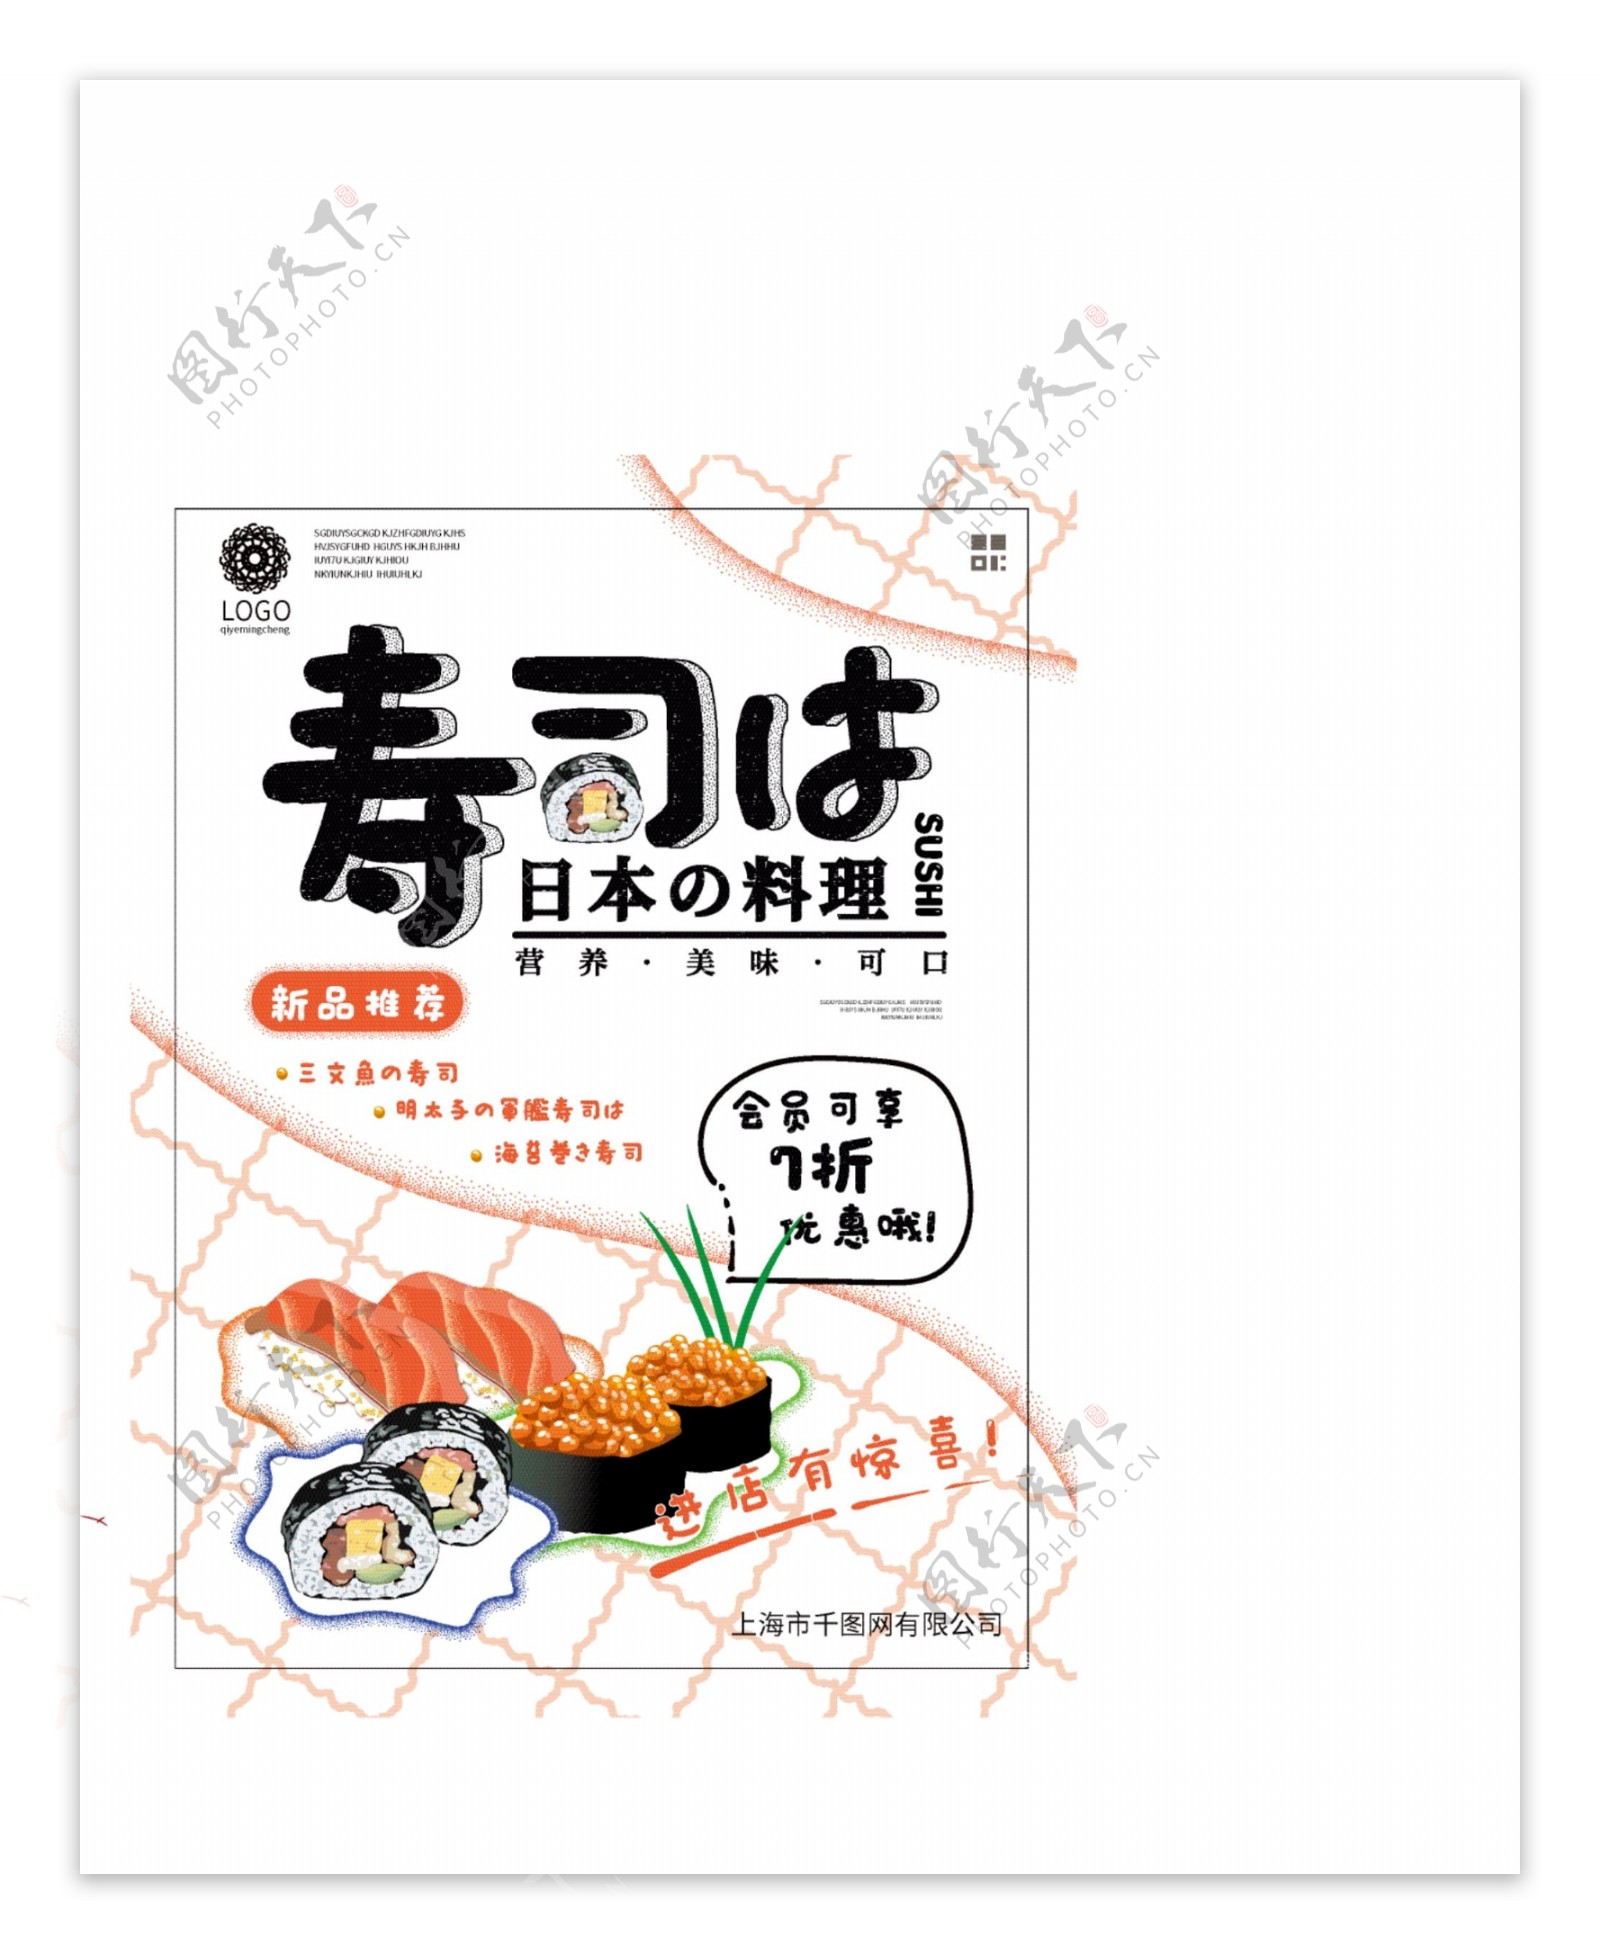 原创简约清新日本料理美食海报寿司料理